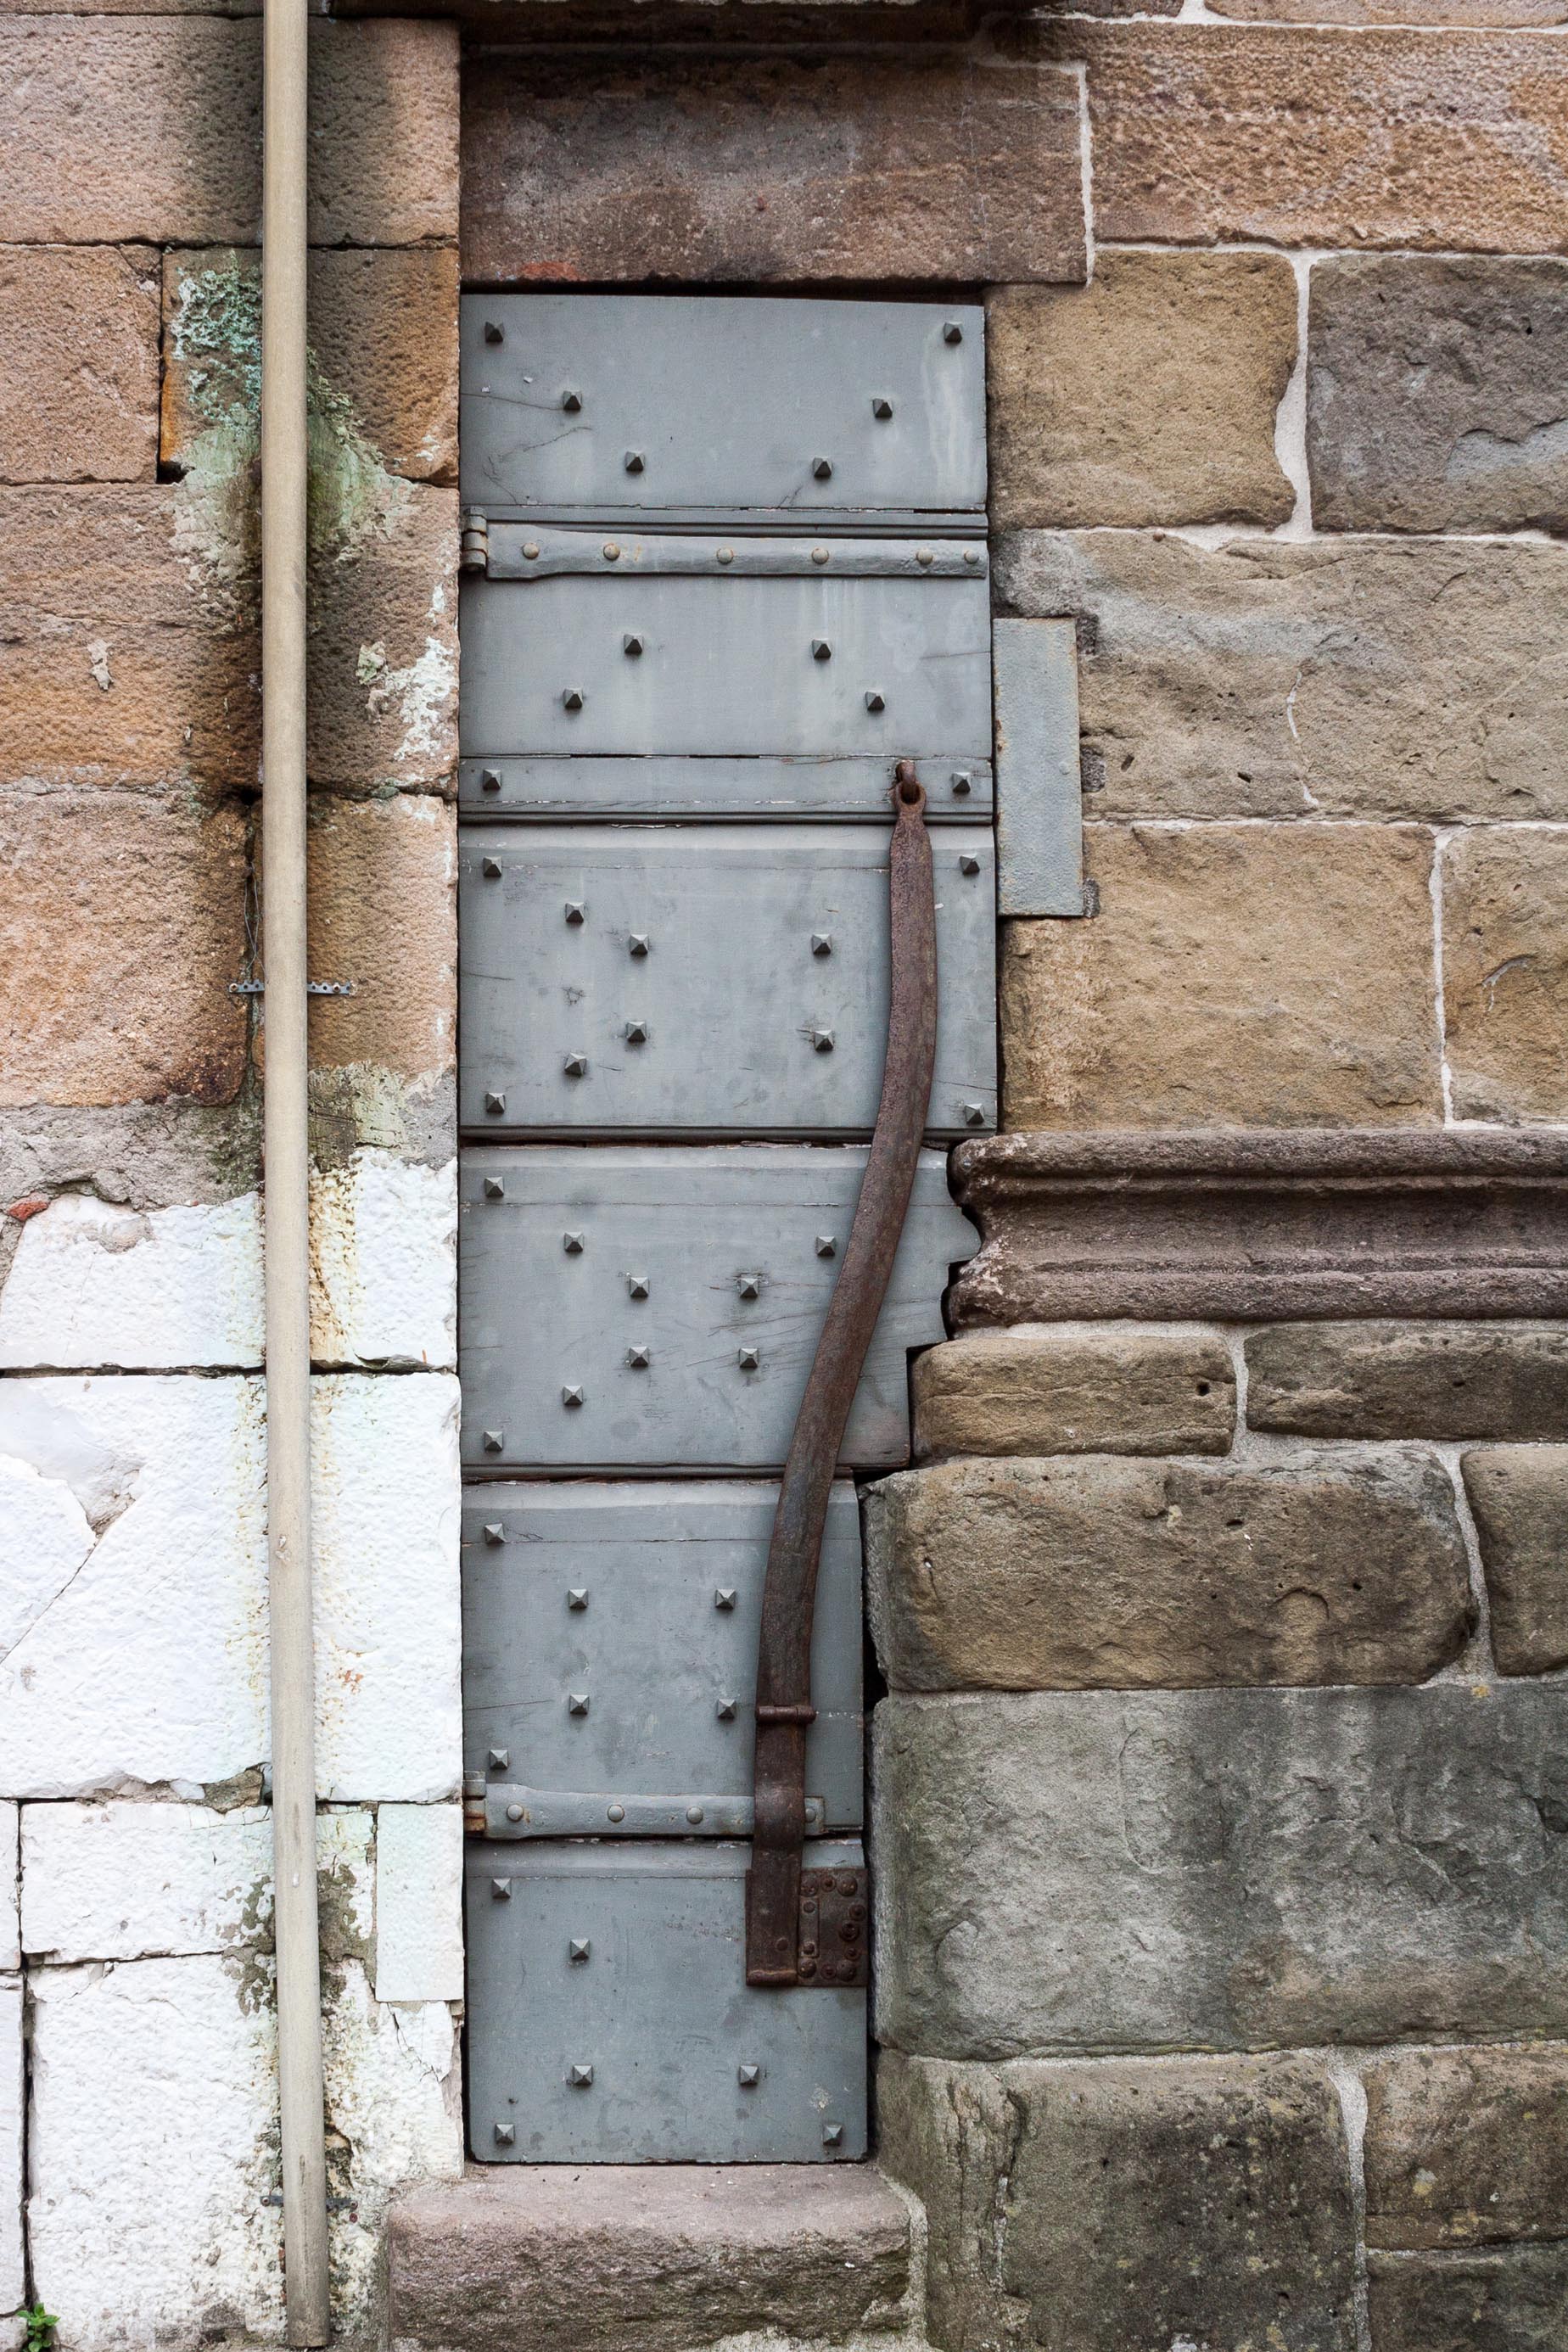 Church door in Lucca, Italy. May 2015.